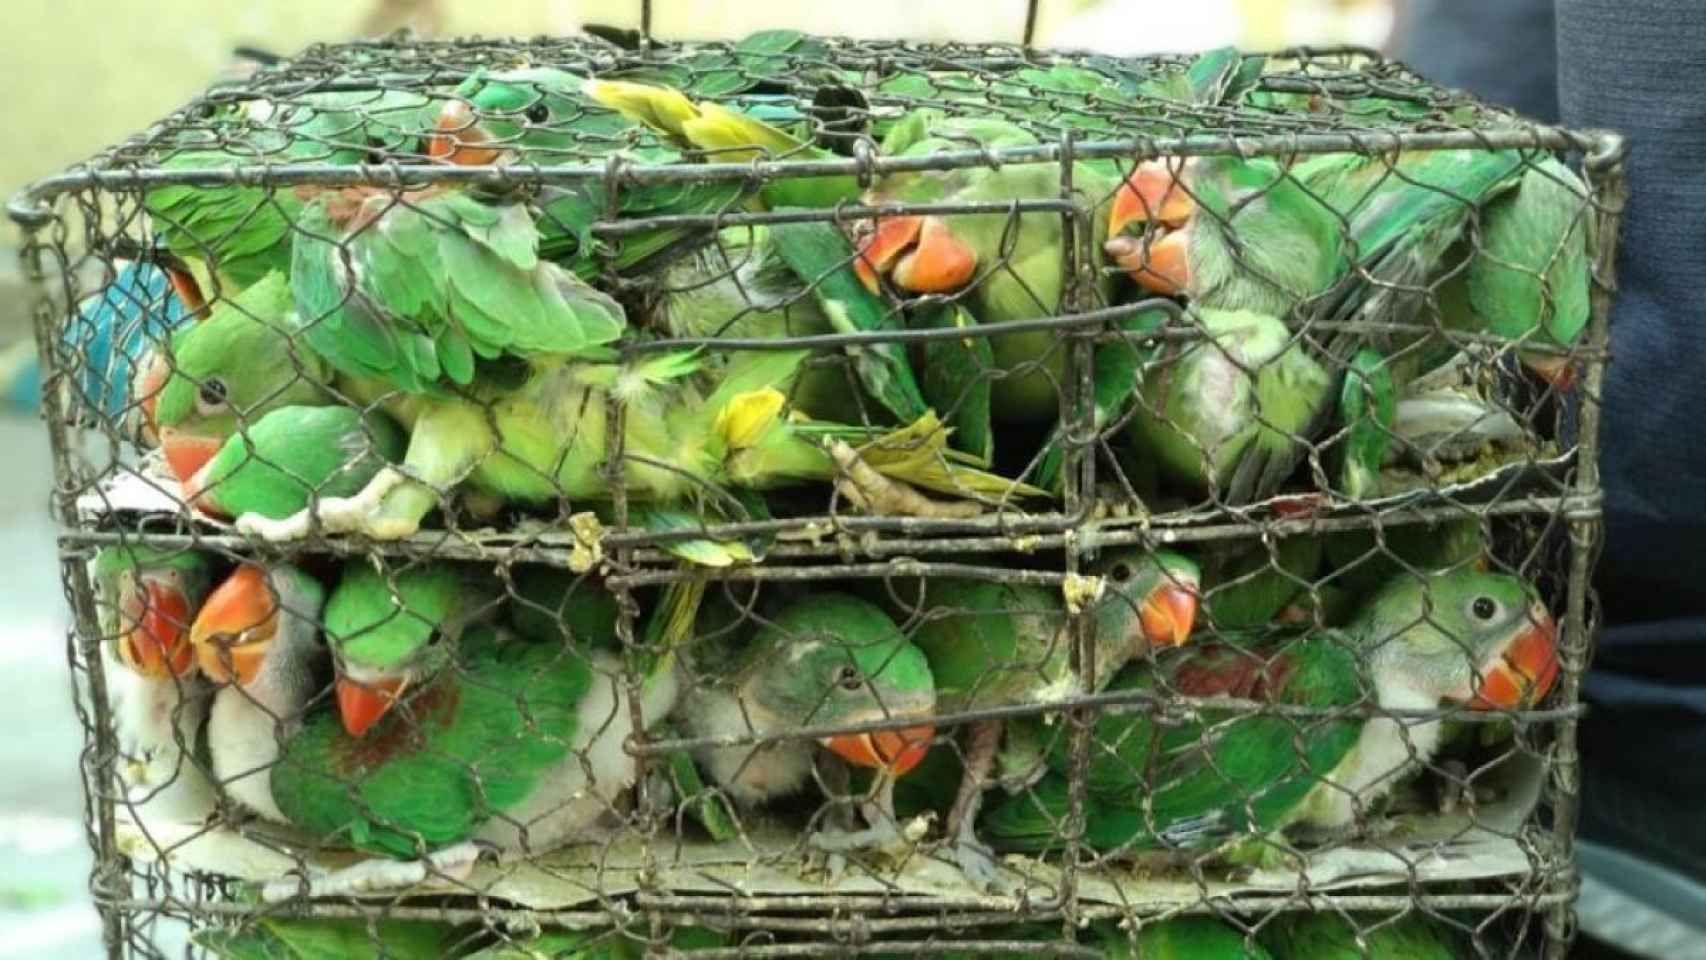 Jaula con decenas de pájaros para su venta ilegal en el mercado negro